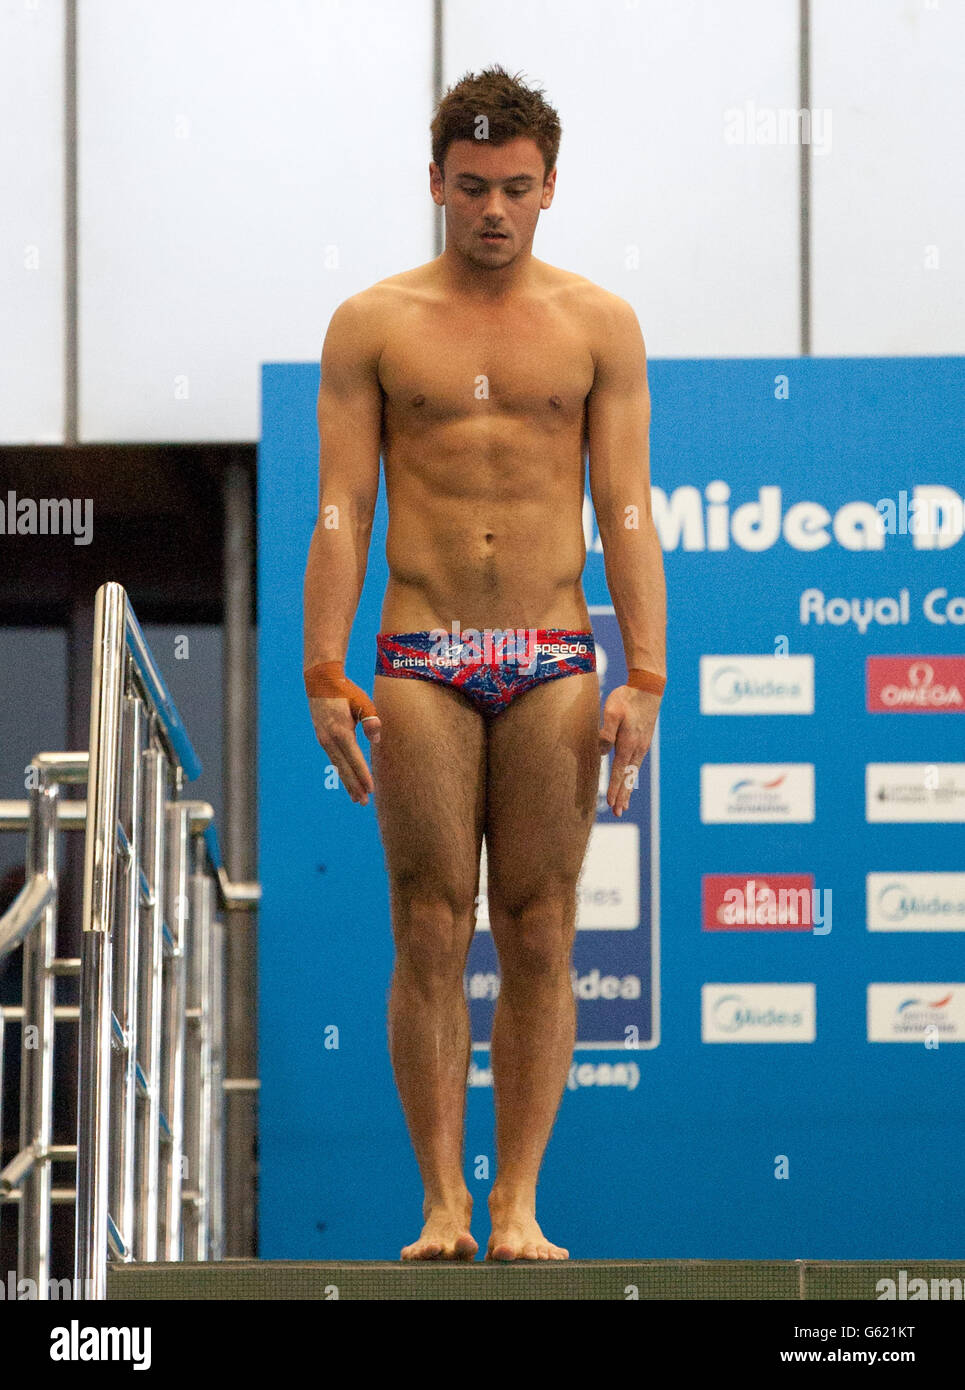 Tom Daley, de Gran Bretaña, compite en la ronda preliminar de la plataforma  Men's 10m Platform durante la serie mundial de buceo FINA en la Royal  Commonwealth Pool, Edimburgo Fotografía de stock -